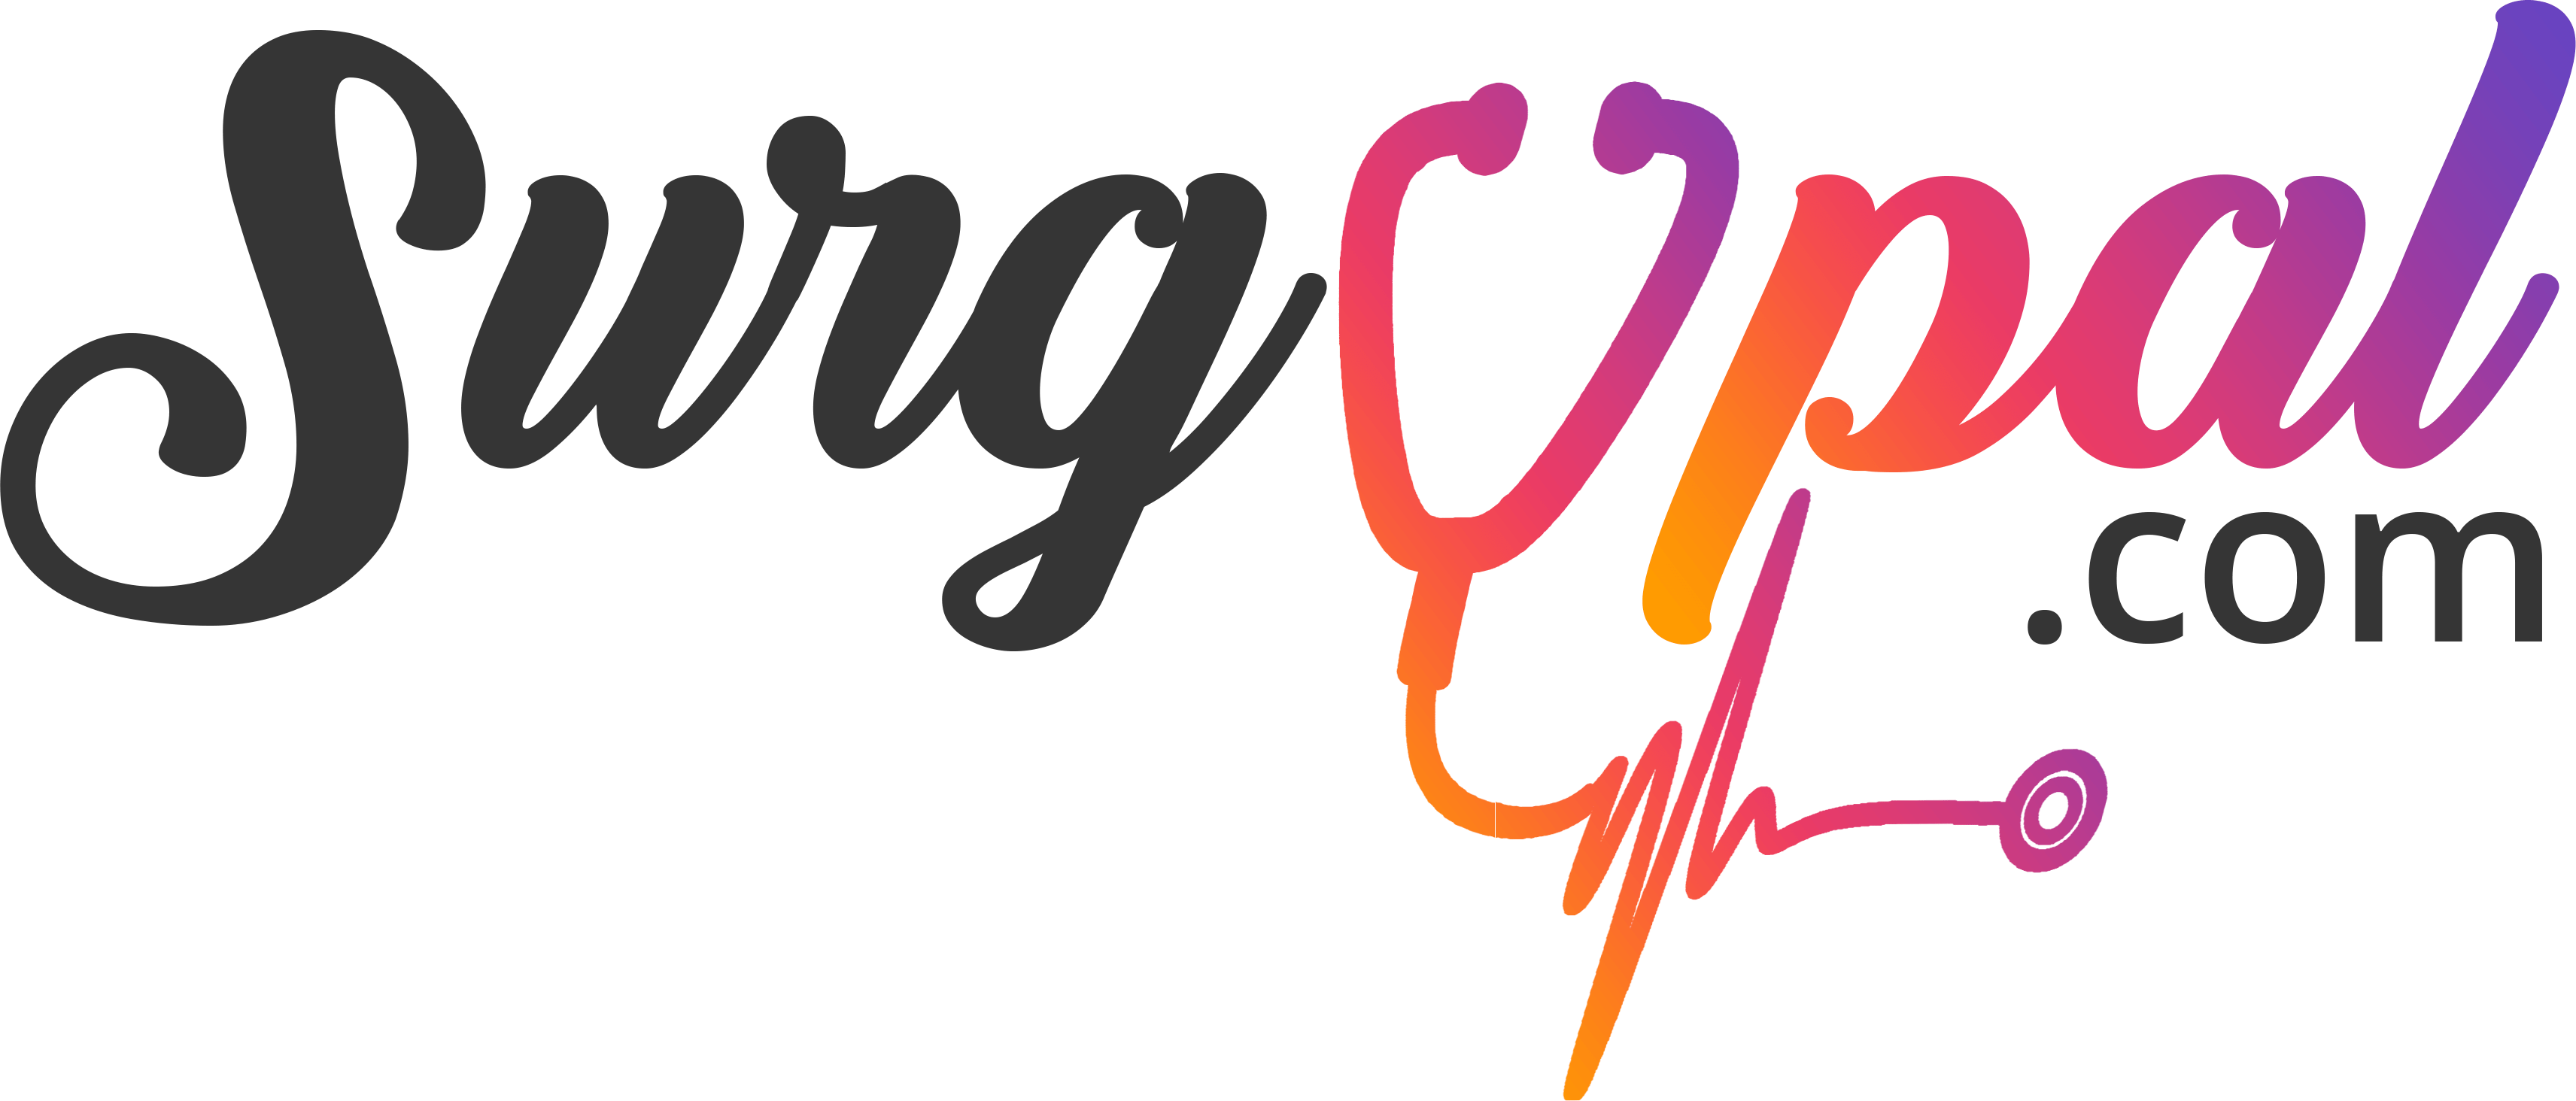 surgypal logo